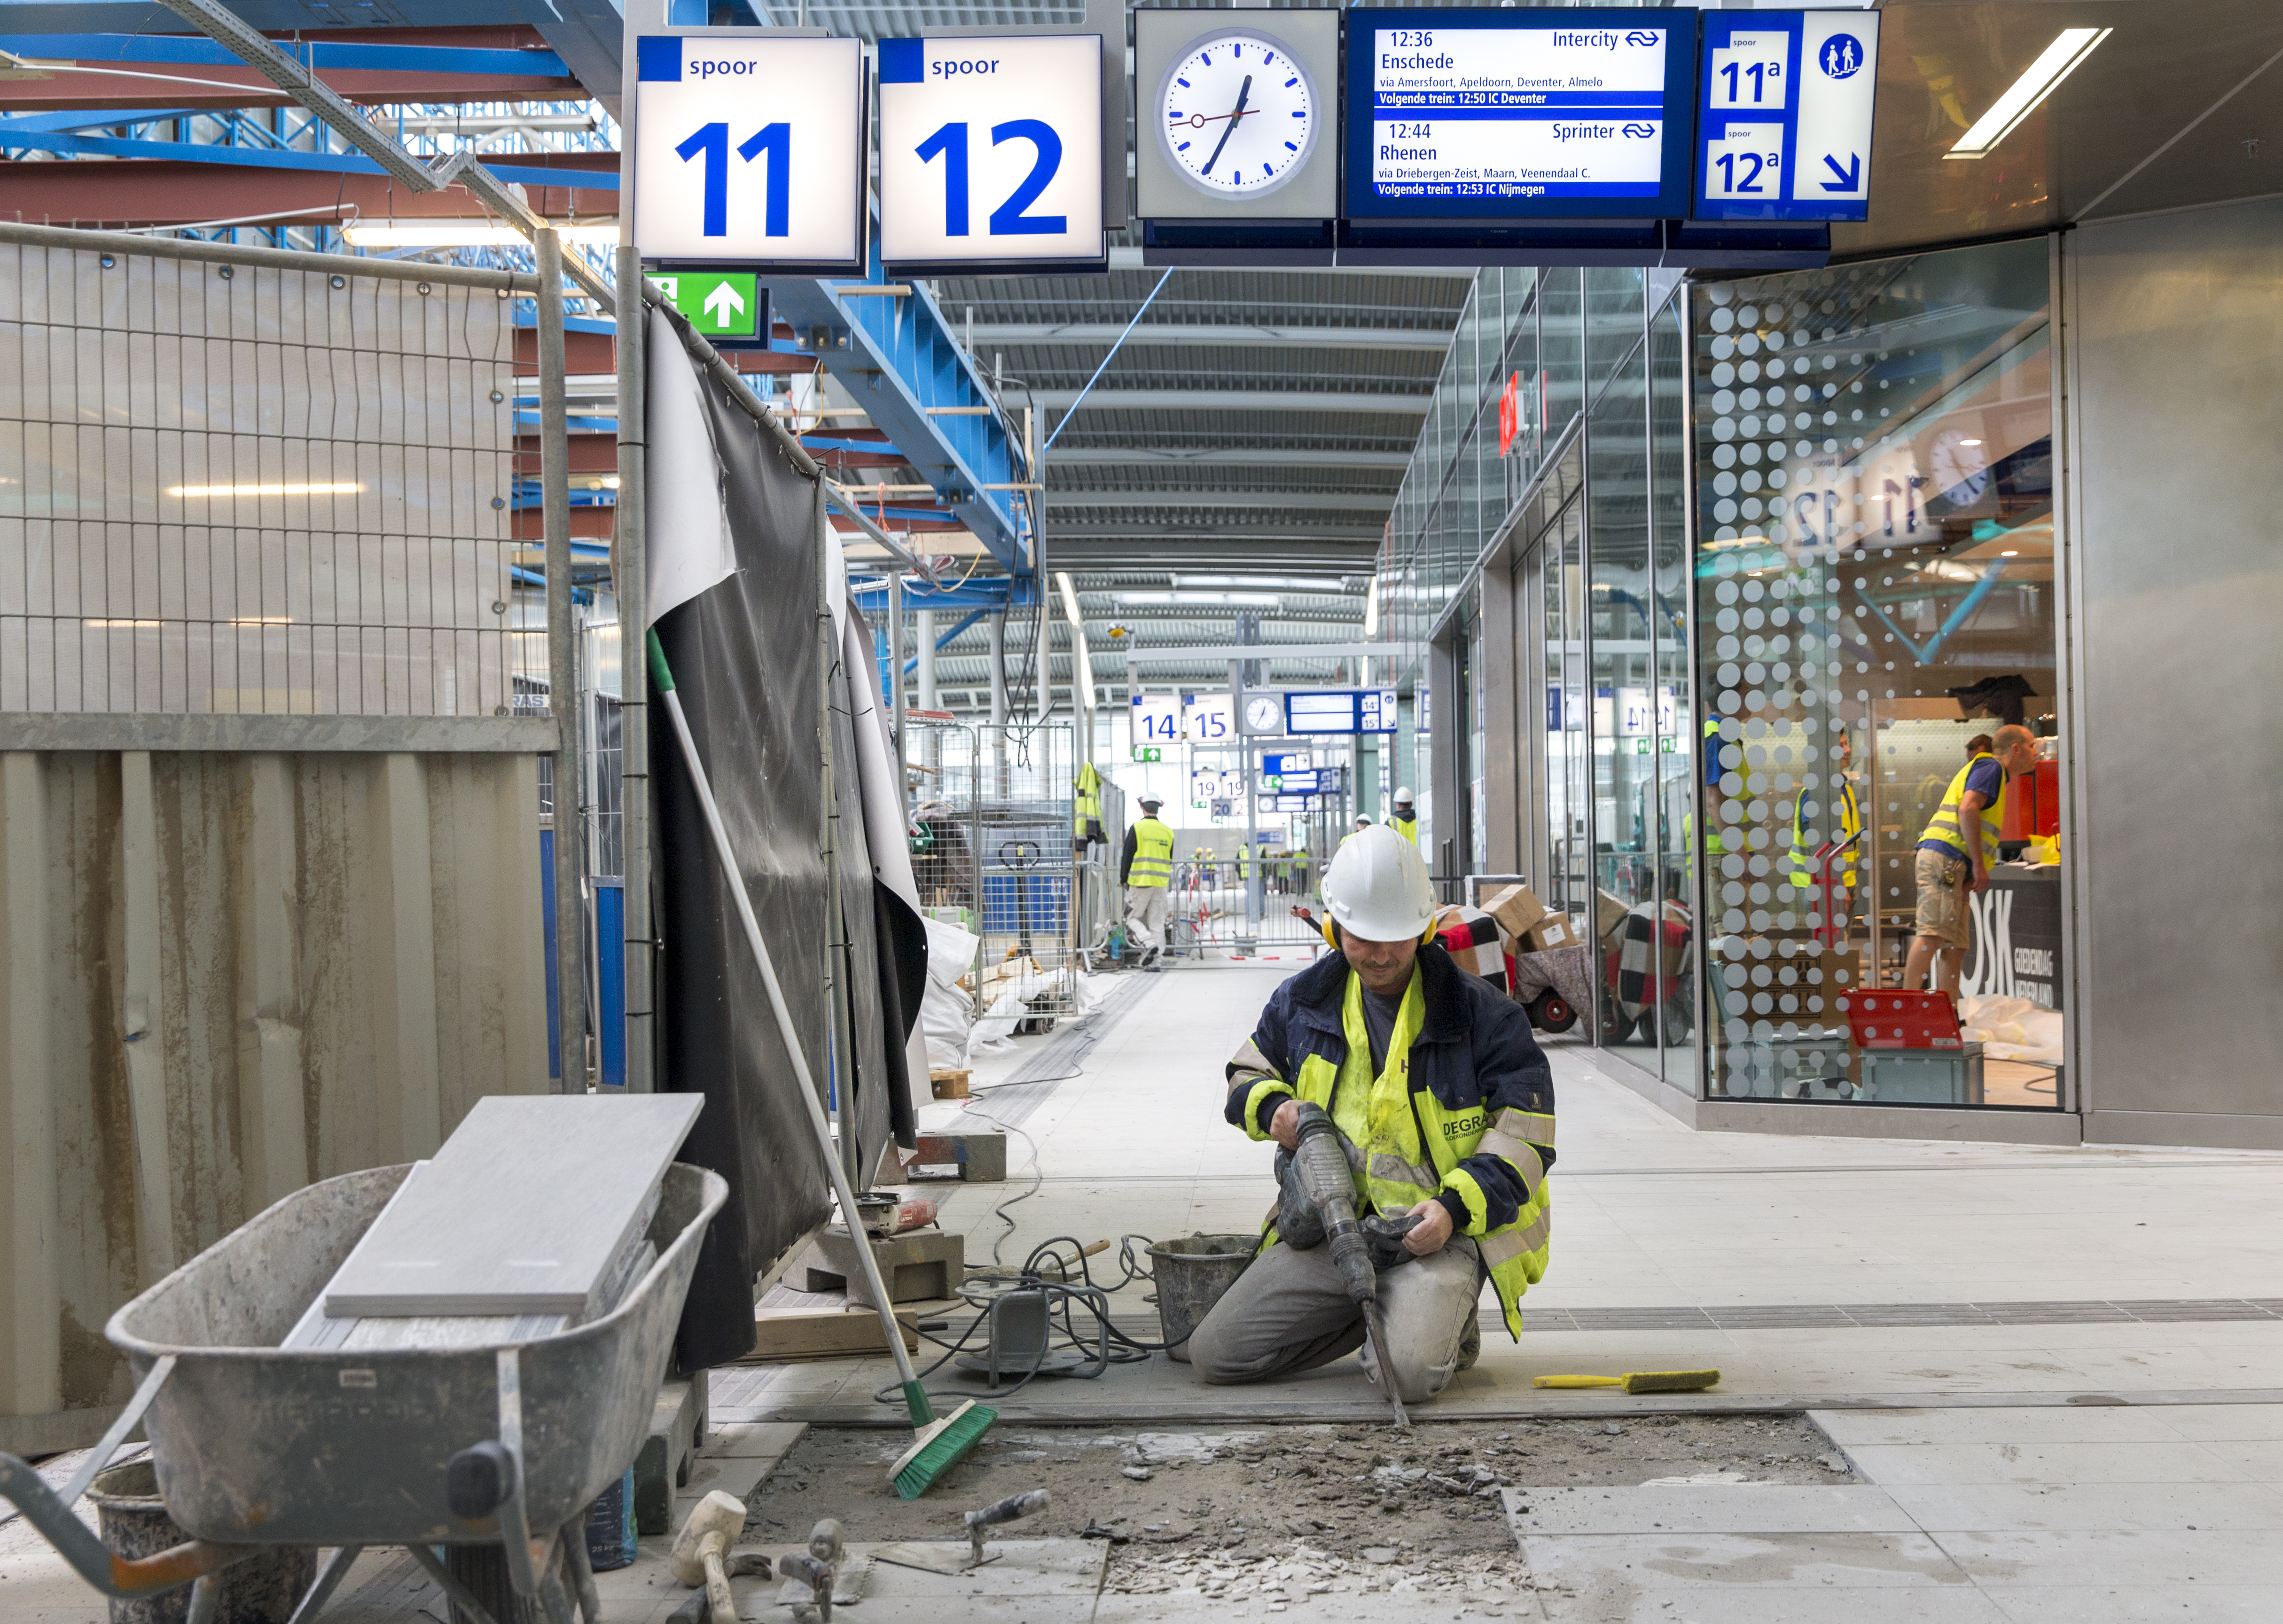 2015-07-30 13:25:49 UTRECHT - De verbouwing van Utrecht Centraal, daags voor de opening van een nieuw deel van het station voor reizigers. Eind 2016 moet de verbouwing van de stationshal helemaal klaar zijn. ANP JERRY LAMPEN